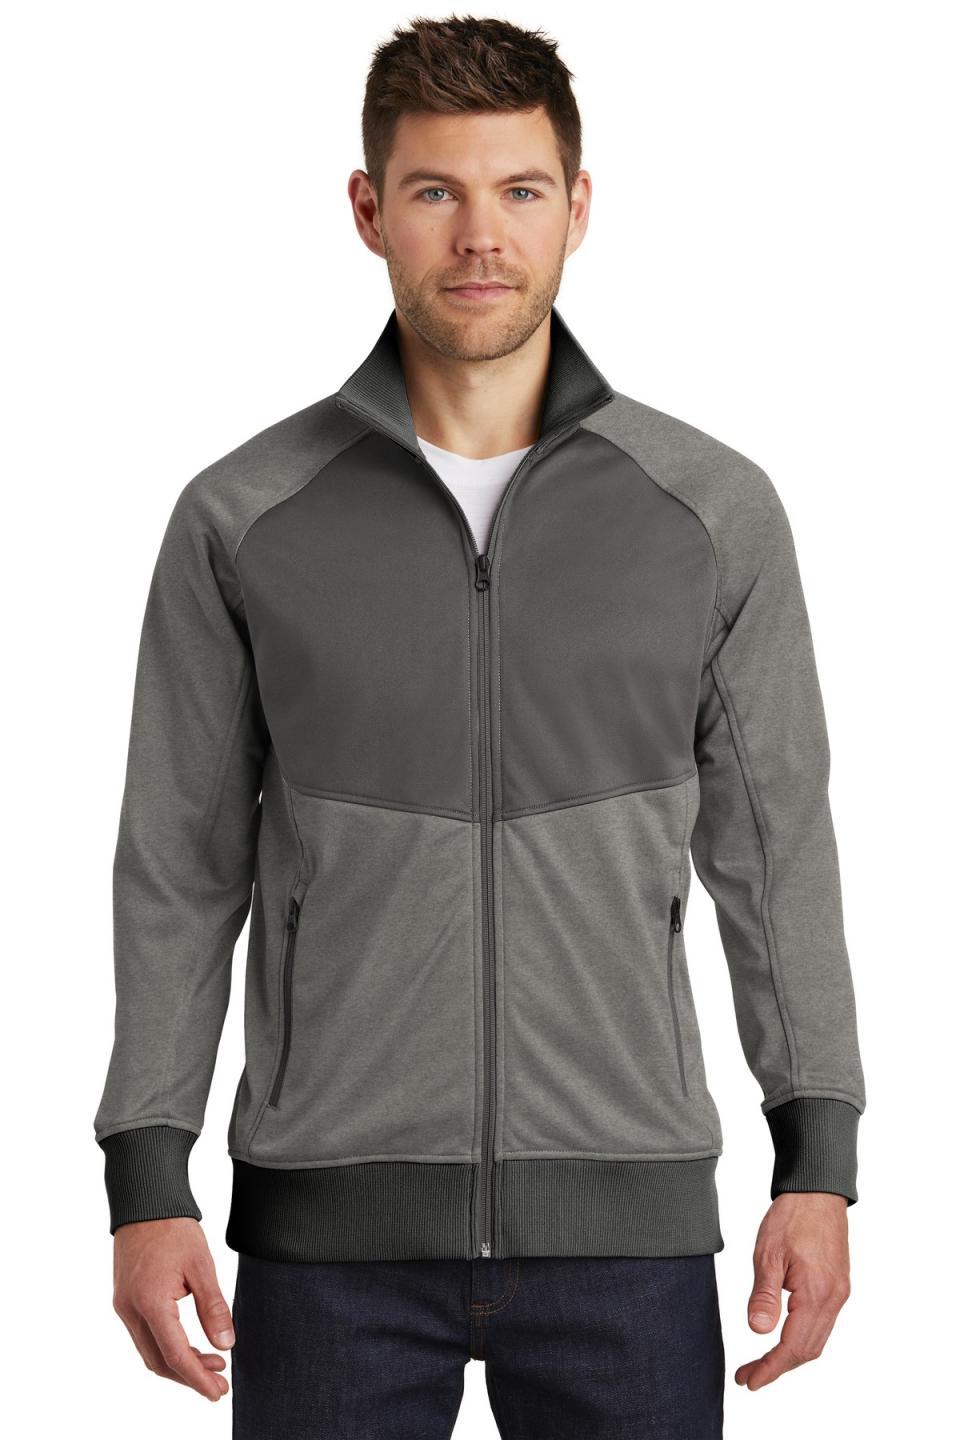 The North Face Men's Tech Full-Zip Fleece Jacket